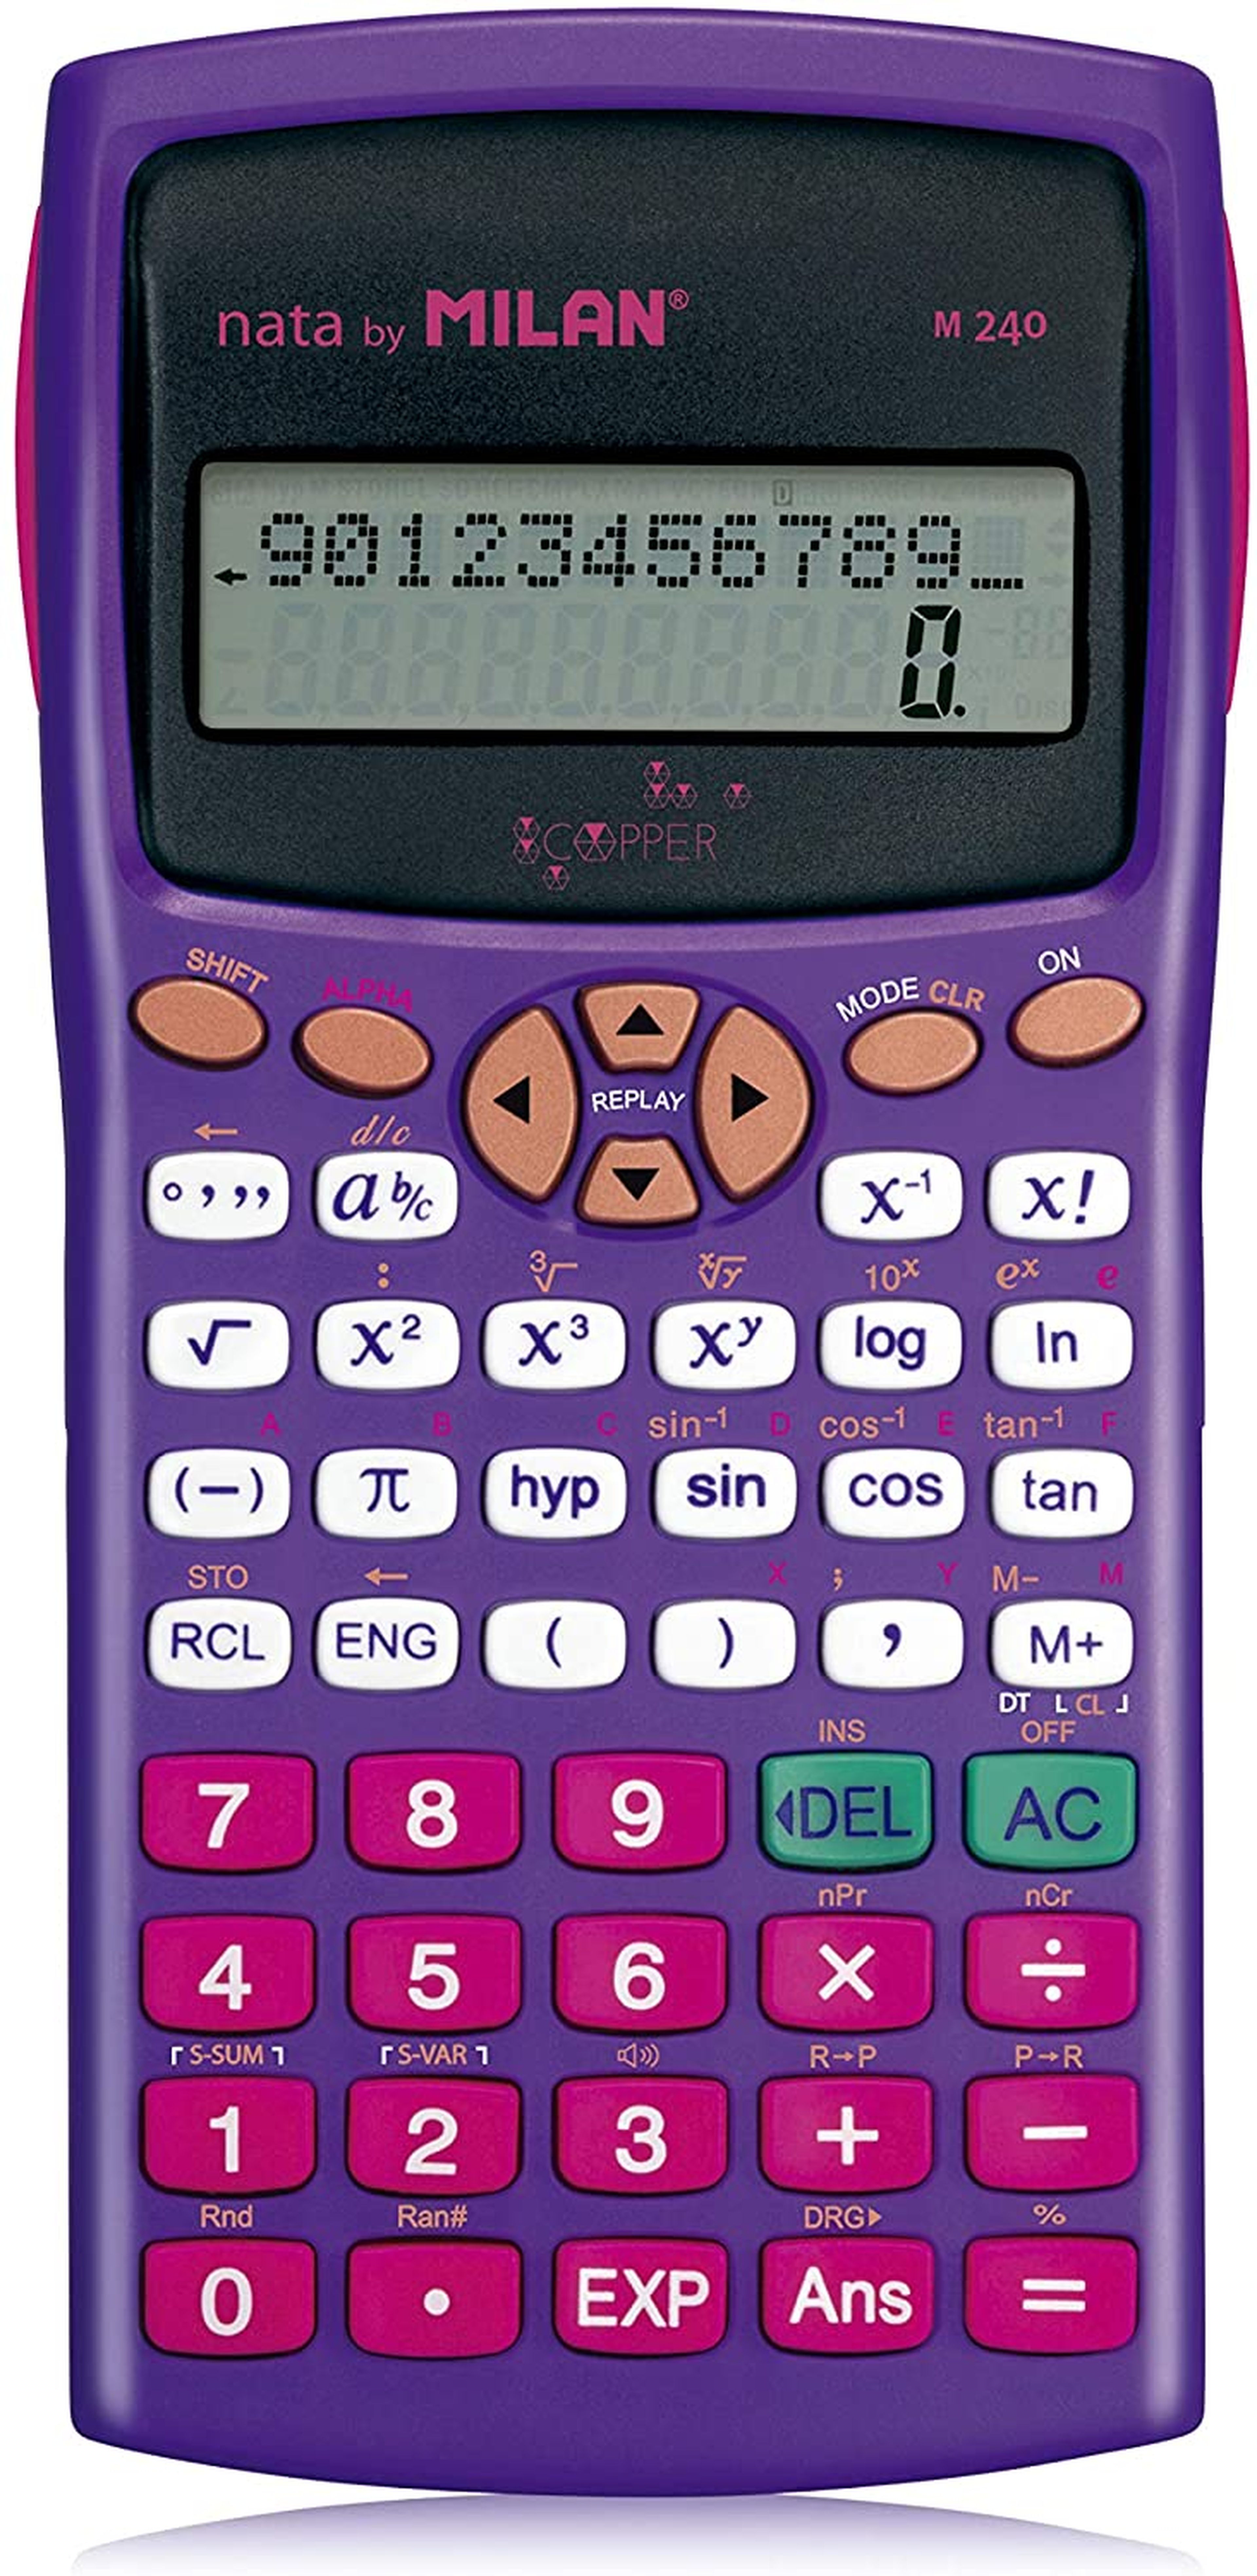 Casio, 50 años de una calculadora mítica